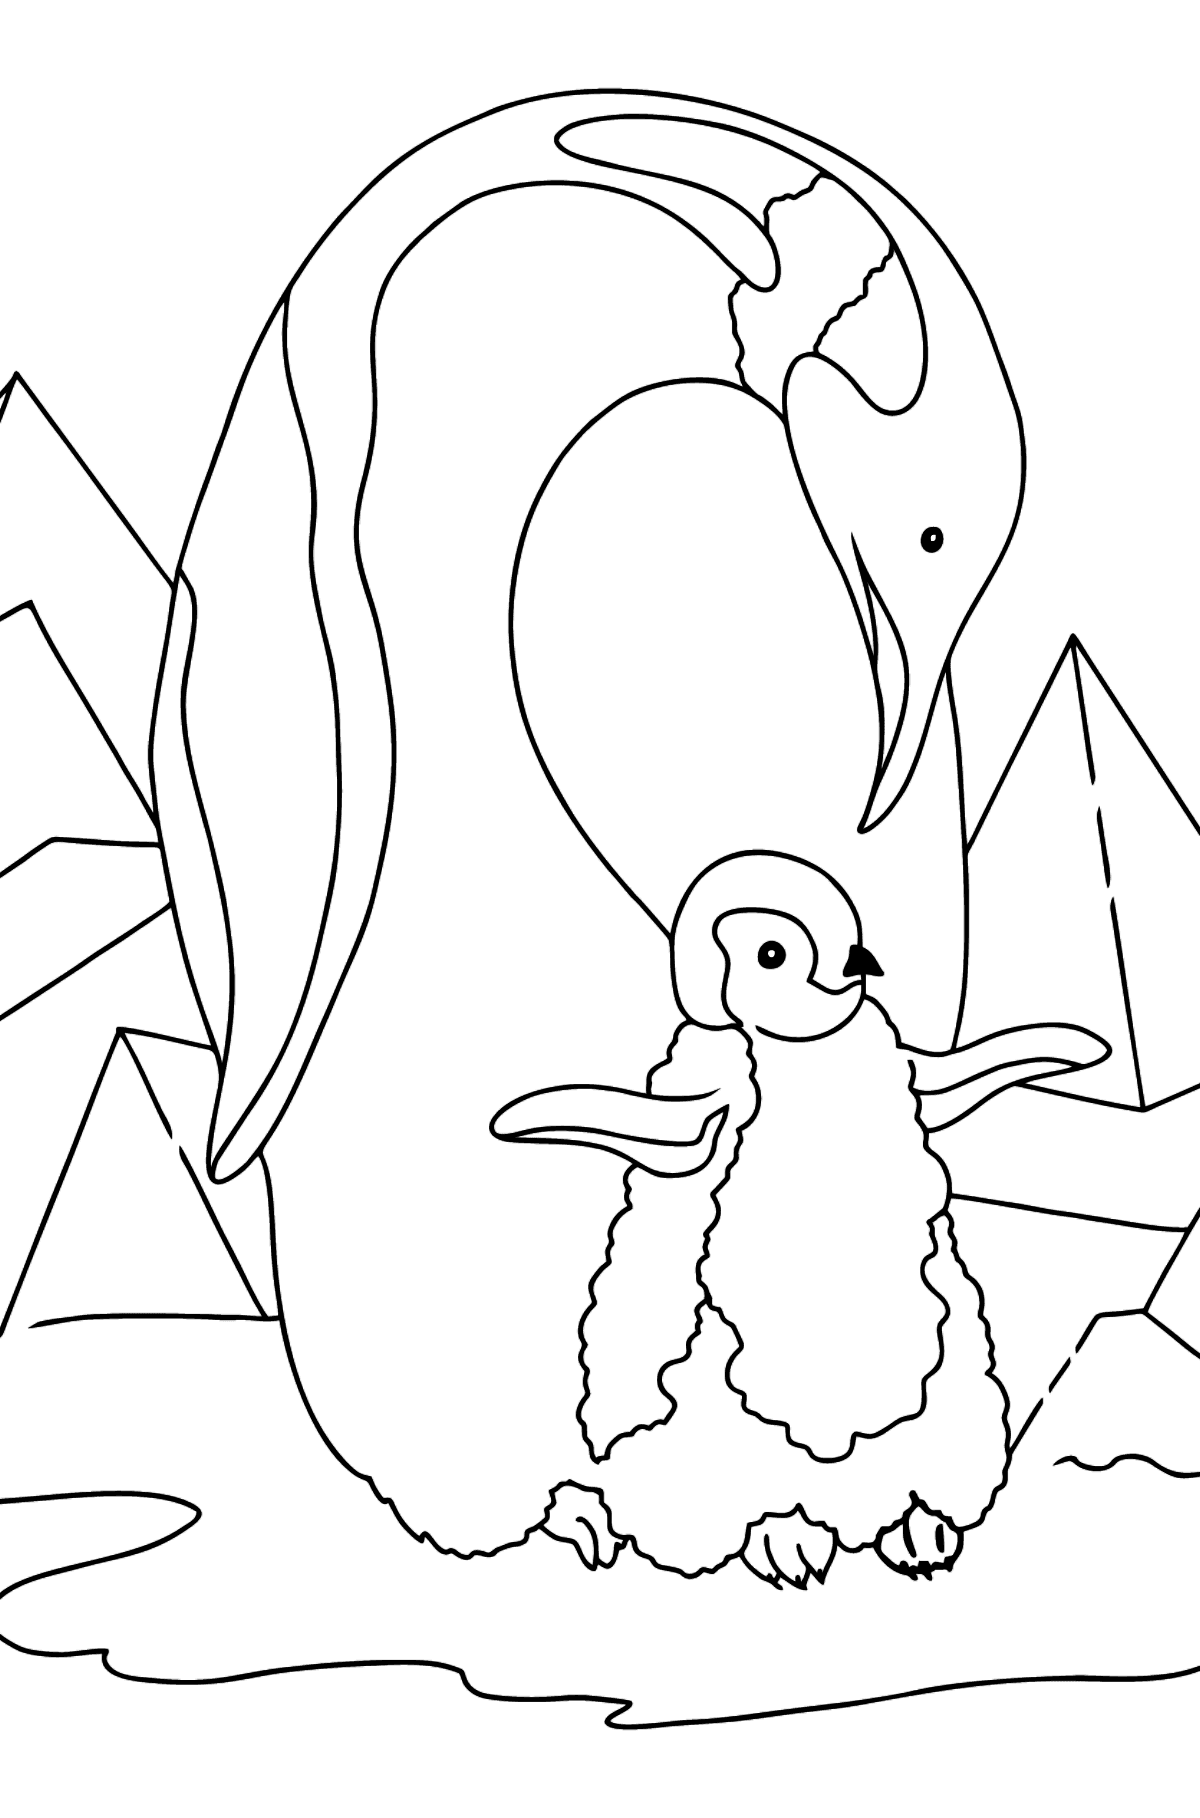 Boyama sayfası çocuklar için penguen - Boyamalar çocuklar için